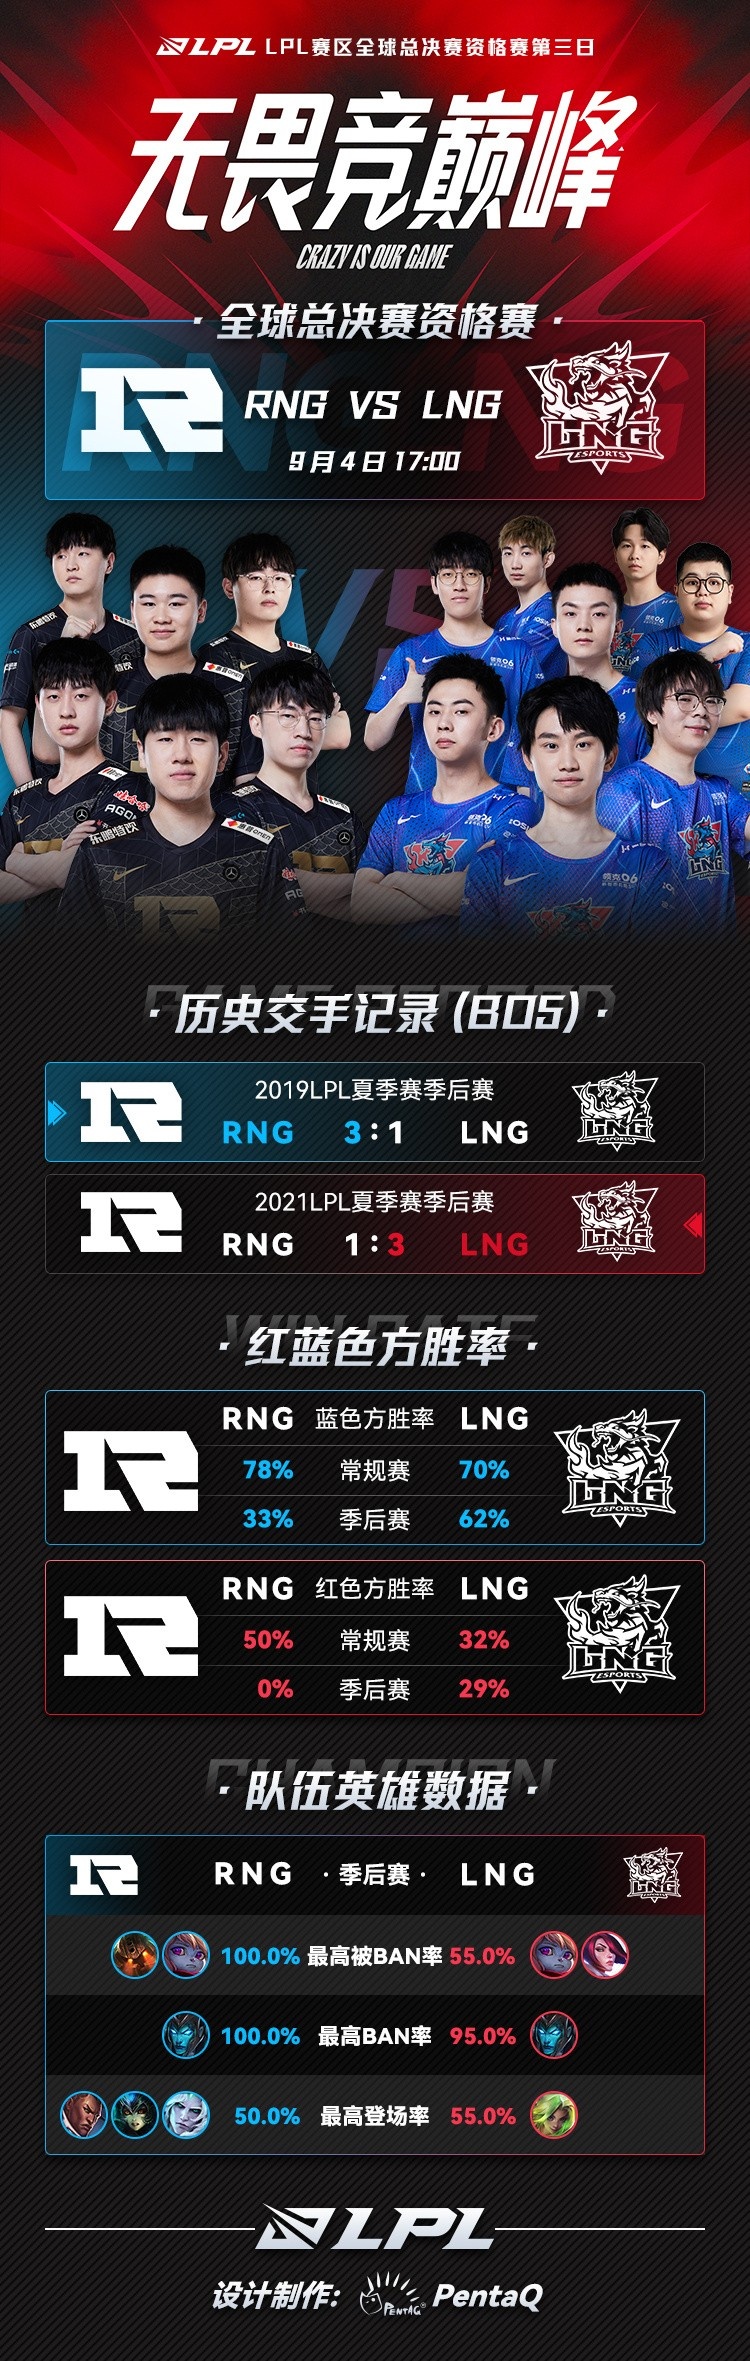 冒泡赛第三日RNG vs LNG数据前瞻：RNG季后赛红色方胜率为0